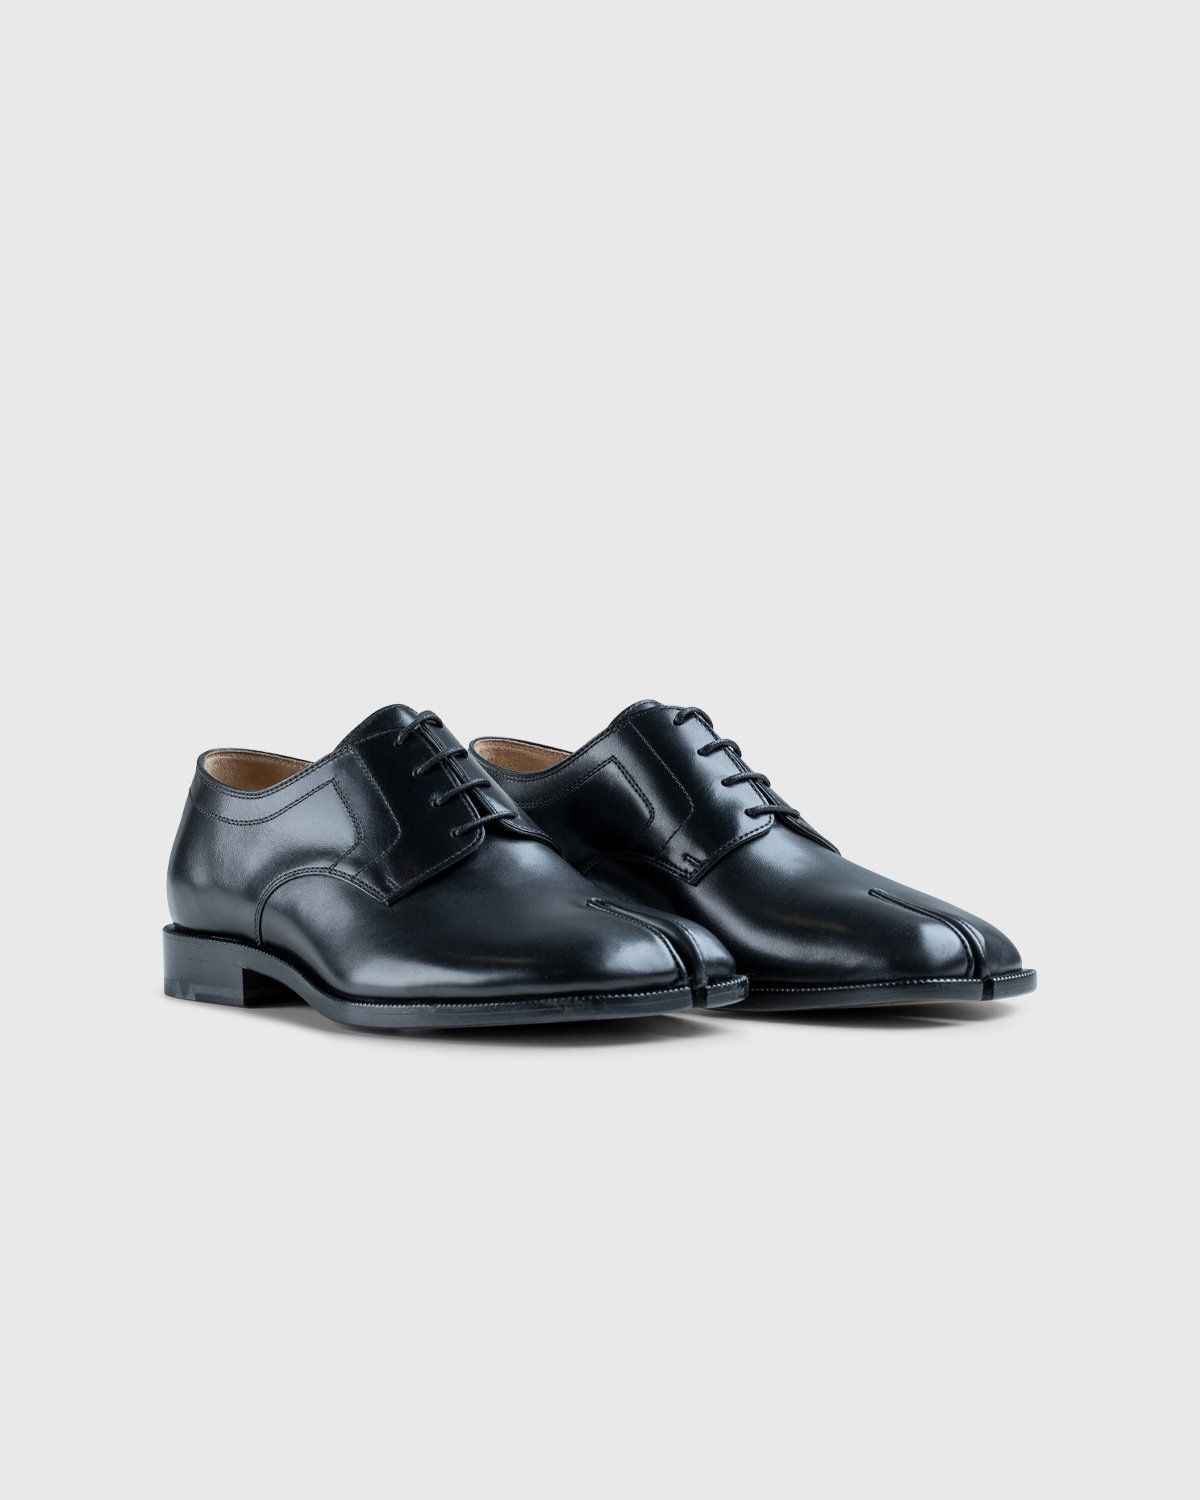 Maison Margiela – Tabi Lace-up Shoes Black - Shoes - Black - Image 2